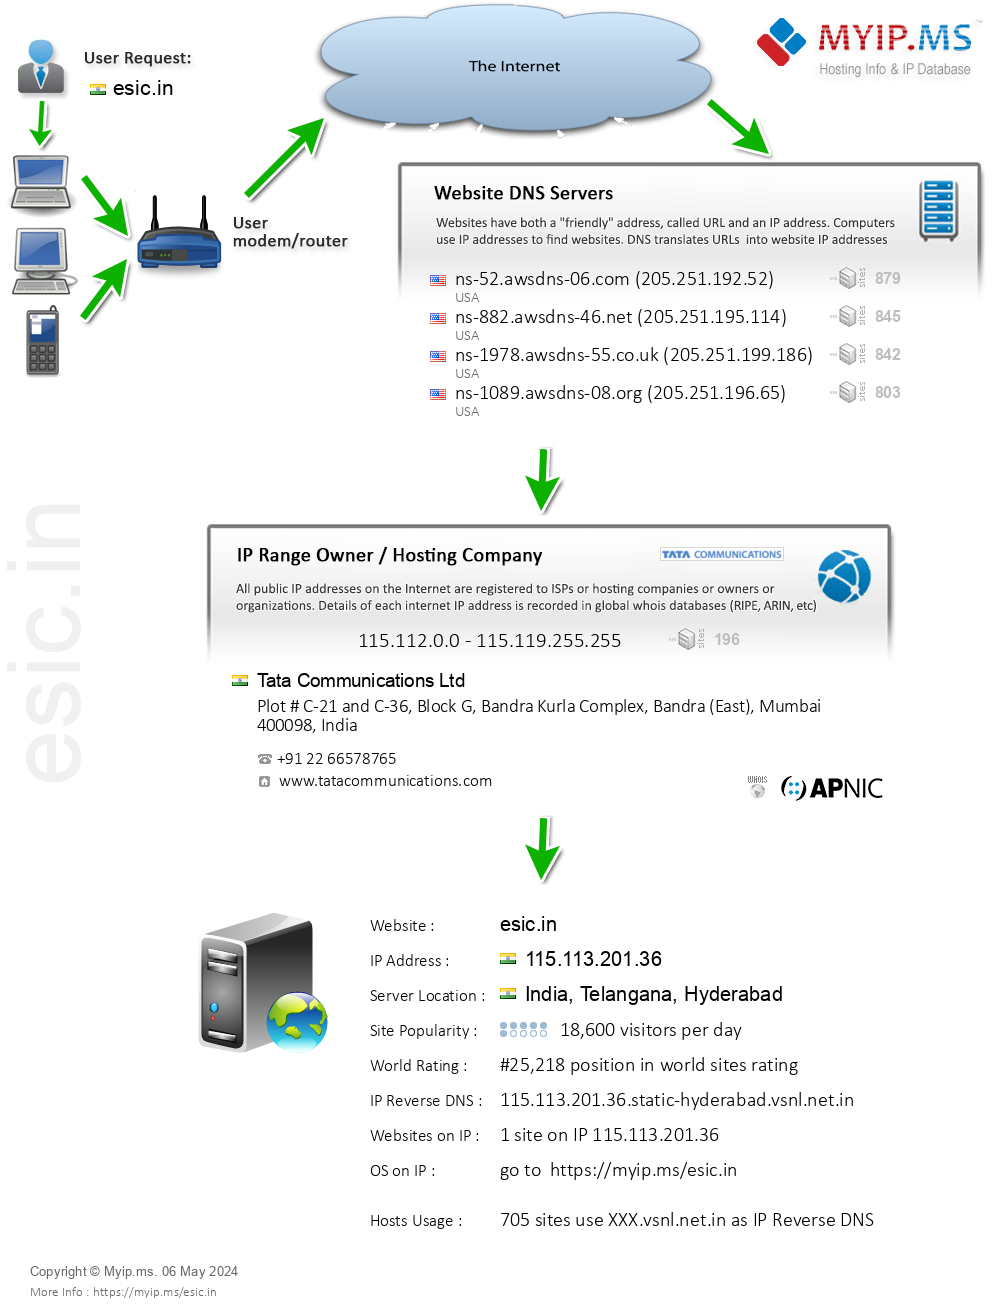 Esic.in - Website Hosting Visual IP Diagram